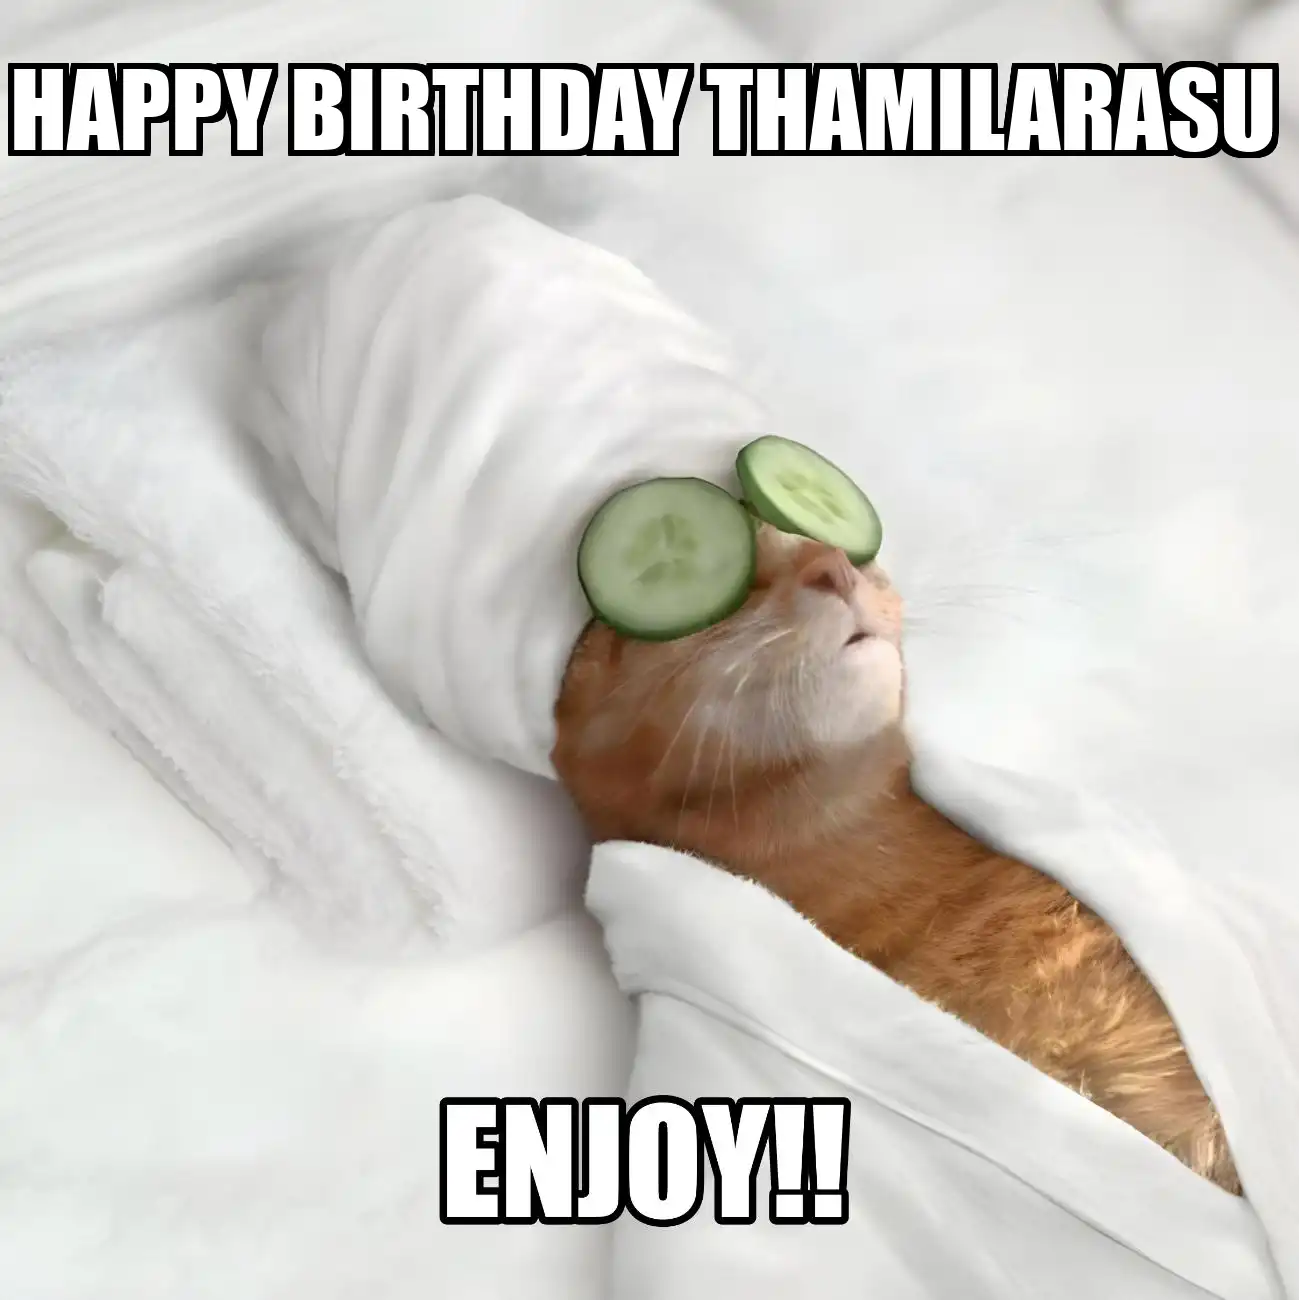 Happy Birthday Thamilarasu Enjoy Cat Meme